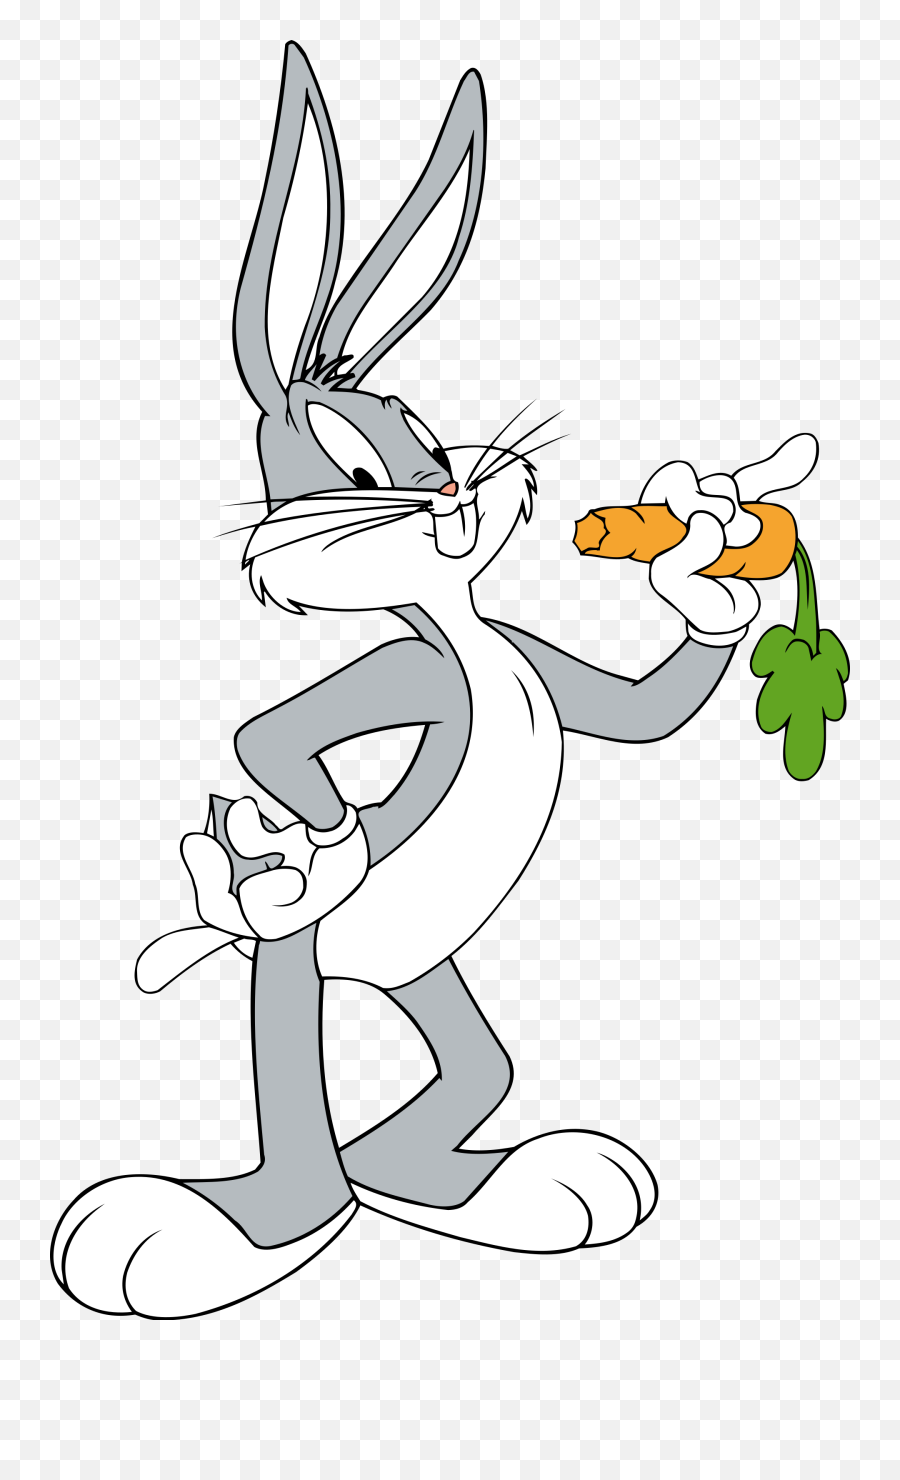 Bugs Bunny - Wikipedia Bugs Bunny Eating Carrot Png,Transparent Cartoons